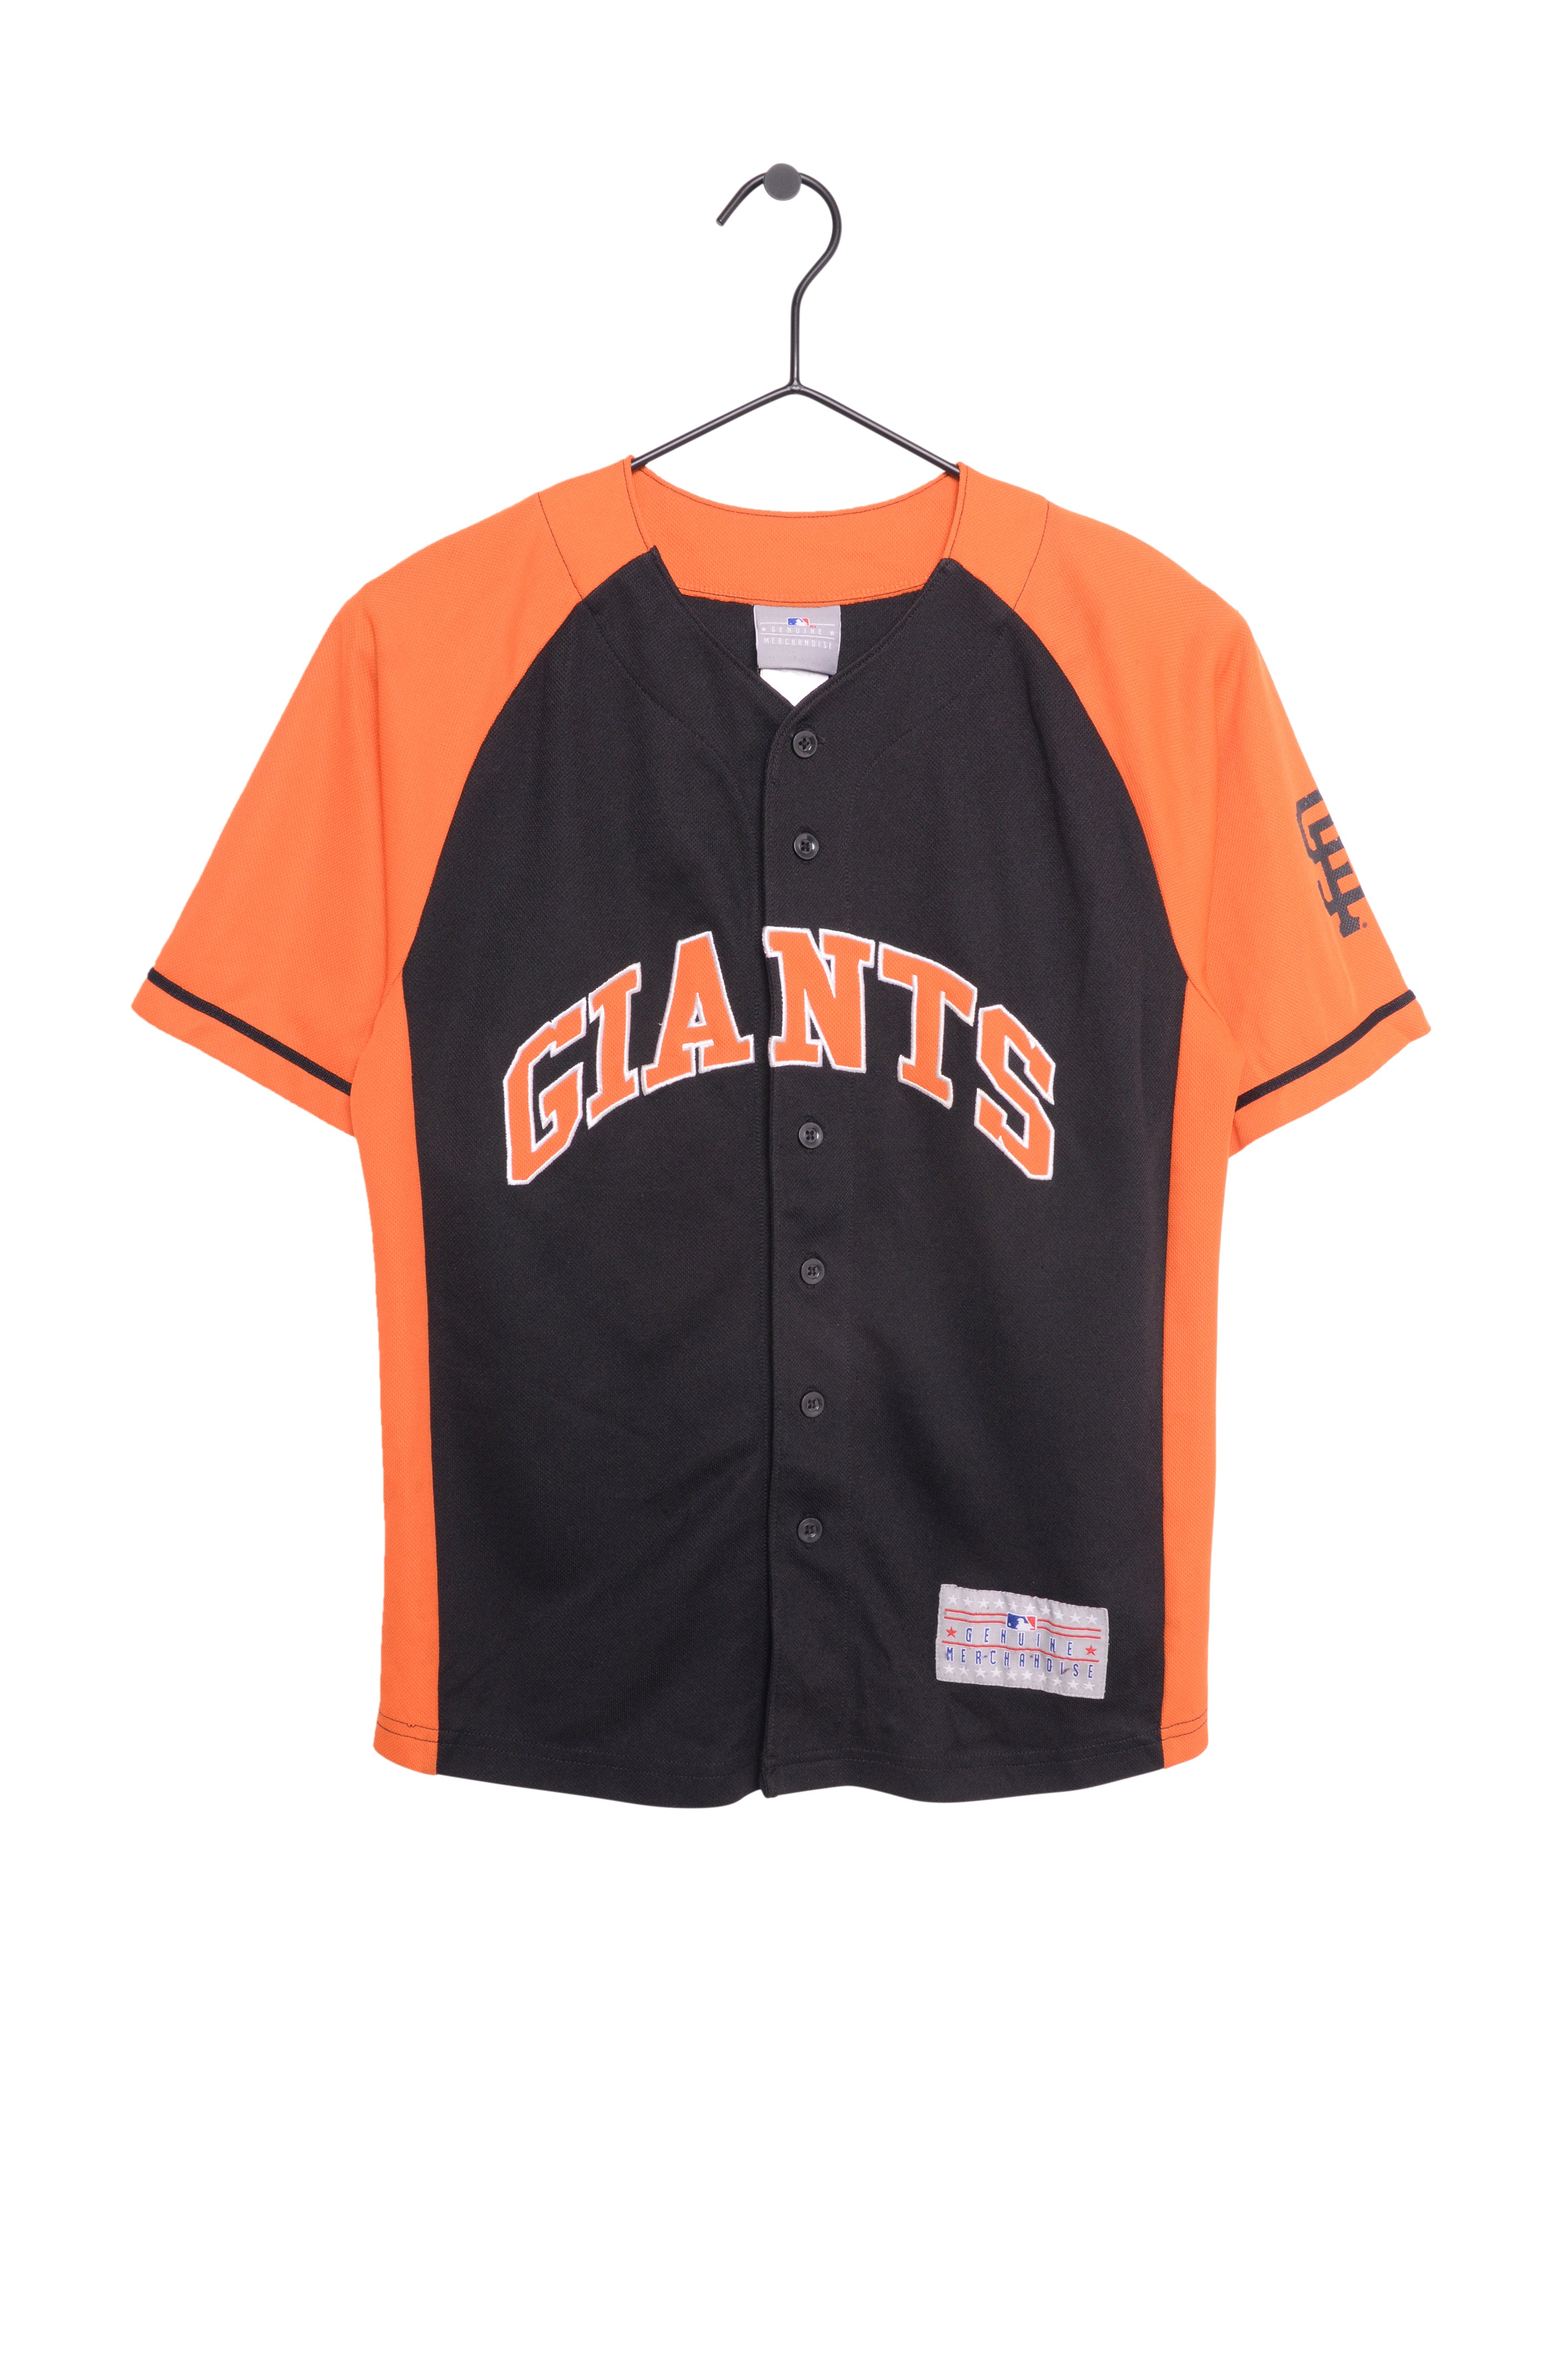 San Francisco Giants Gear, Giants Merchandise, Giants Apparel, Store